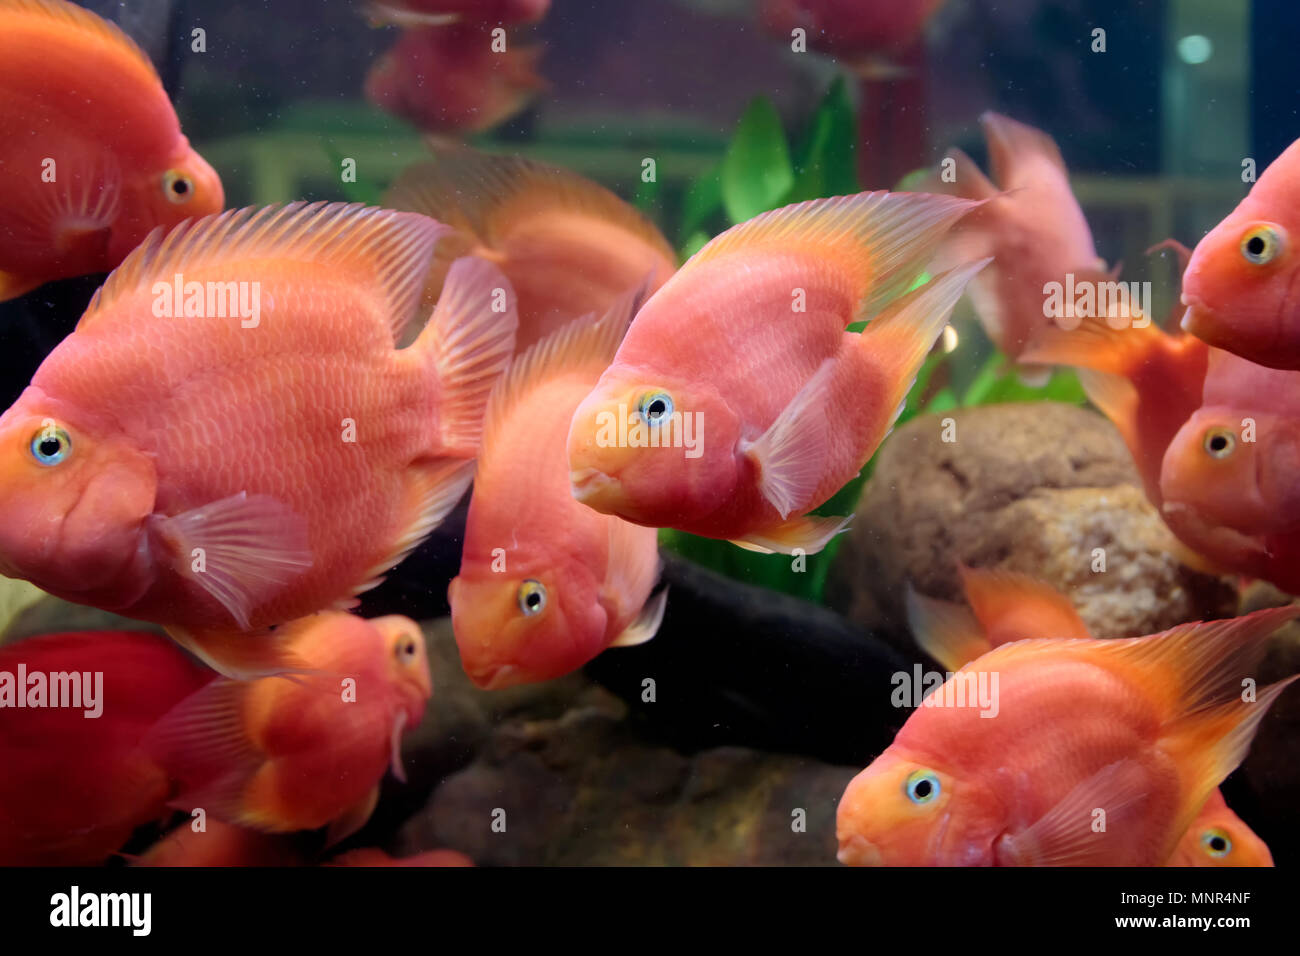 Parrot cichlids swimming in aquarium tank Stock Photo